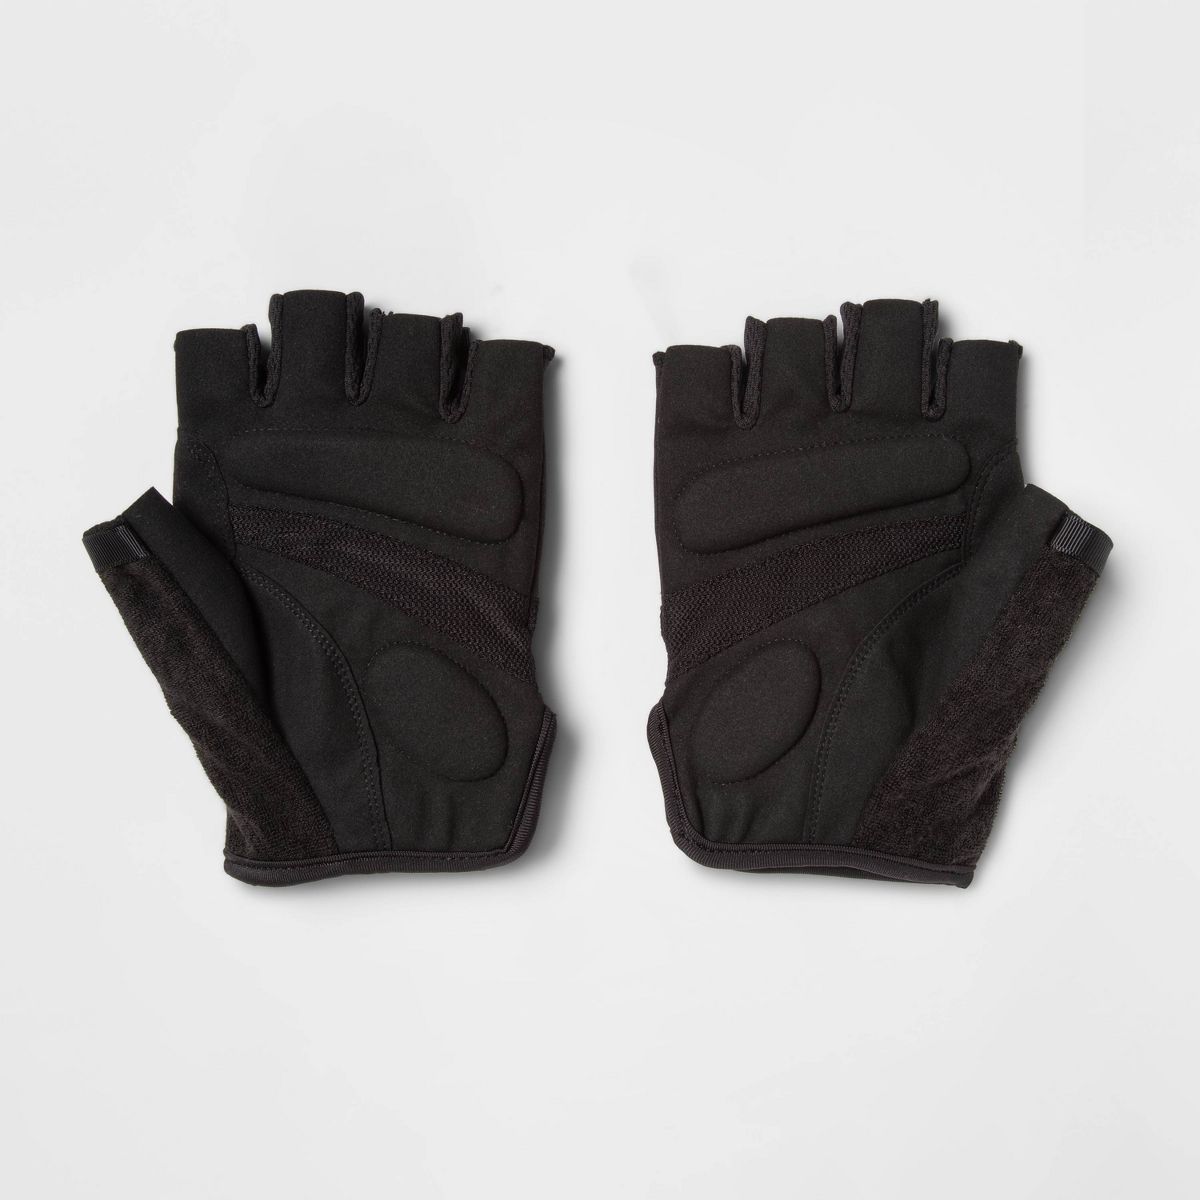 Men's Strength Training Gloves Black - All in Motion™ | Target